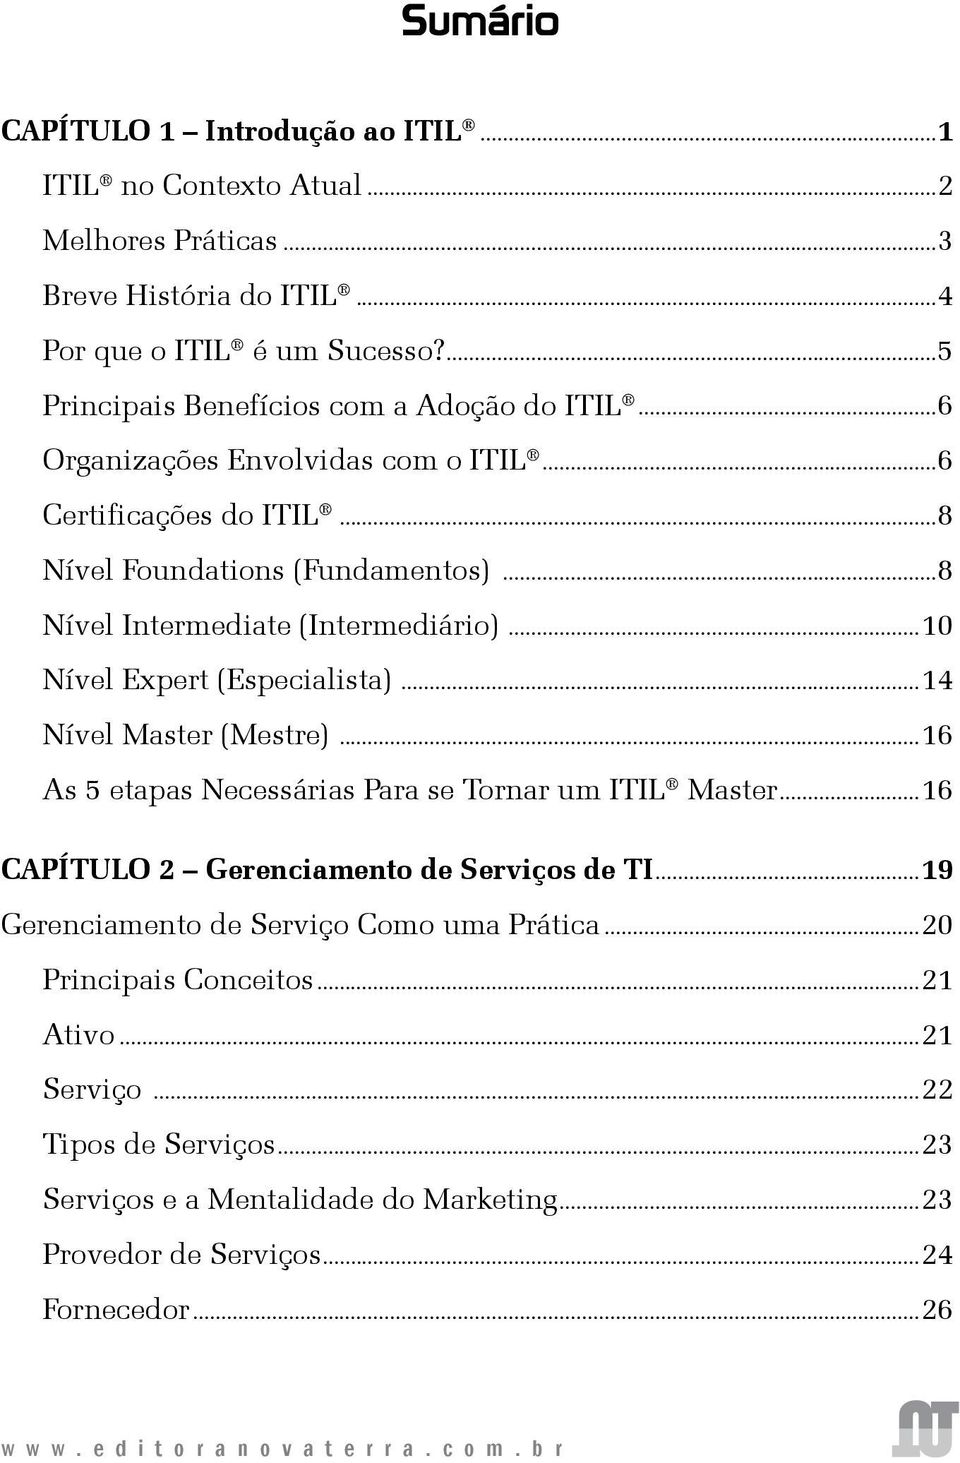 ..8 Nível Intermediate (Intermediário)...10 Nível Expert (Especialista)...14 Nível Master (Mestre)...16 As 5 etapas Necessárias Para se Tornar um ITIL Master.